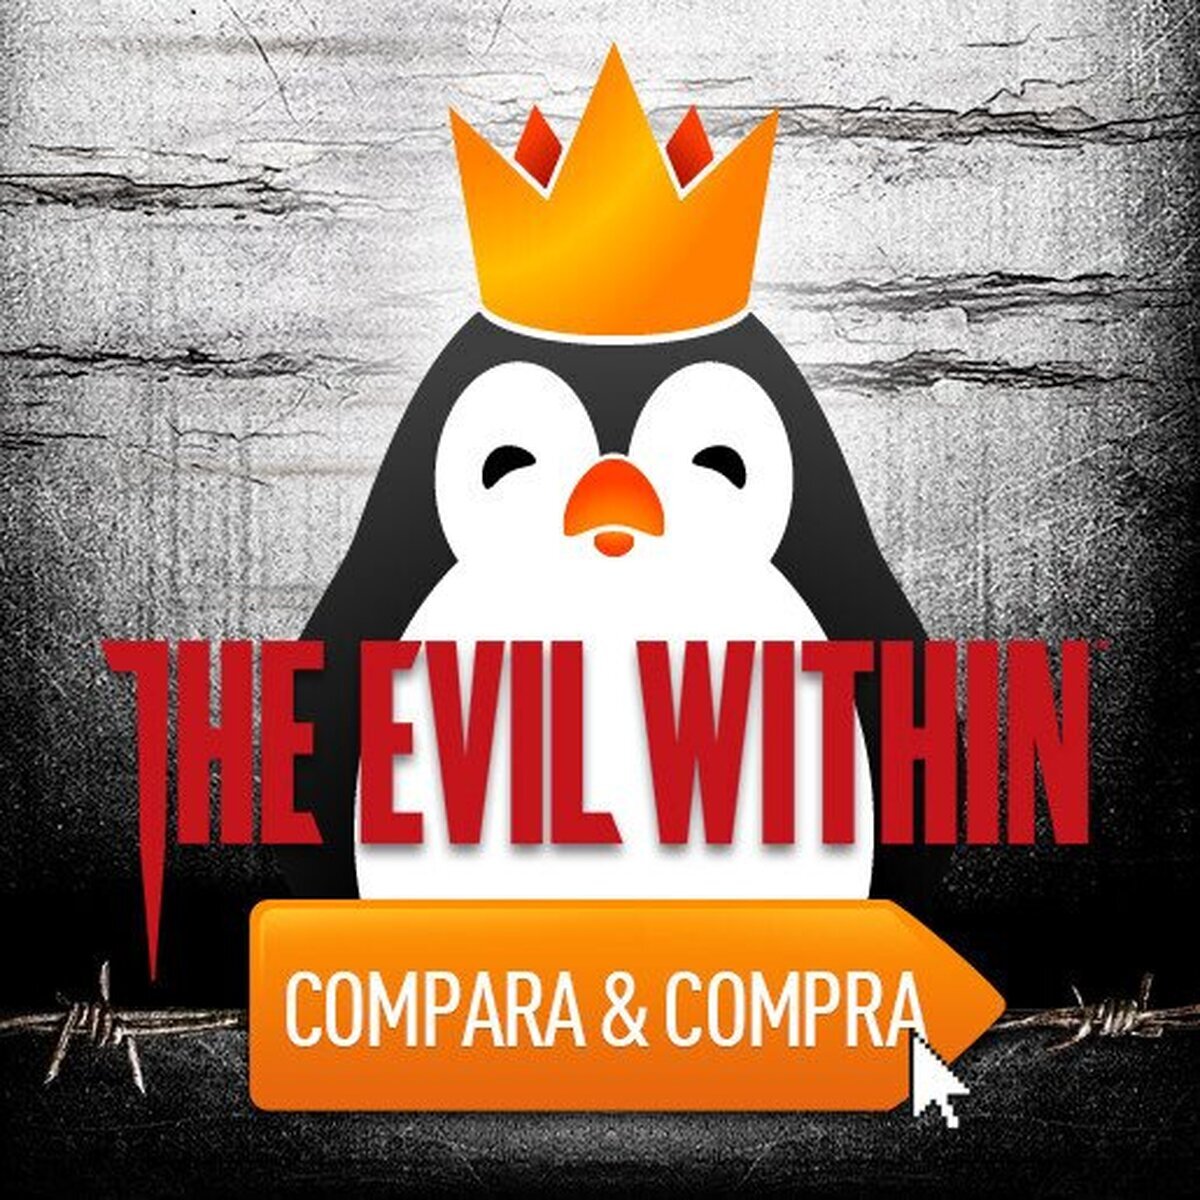 Sorteamos dos códigos de The Evil Within para Steam, ¿quieres uno de ellos?